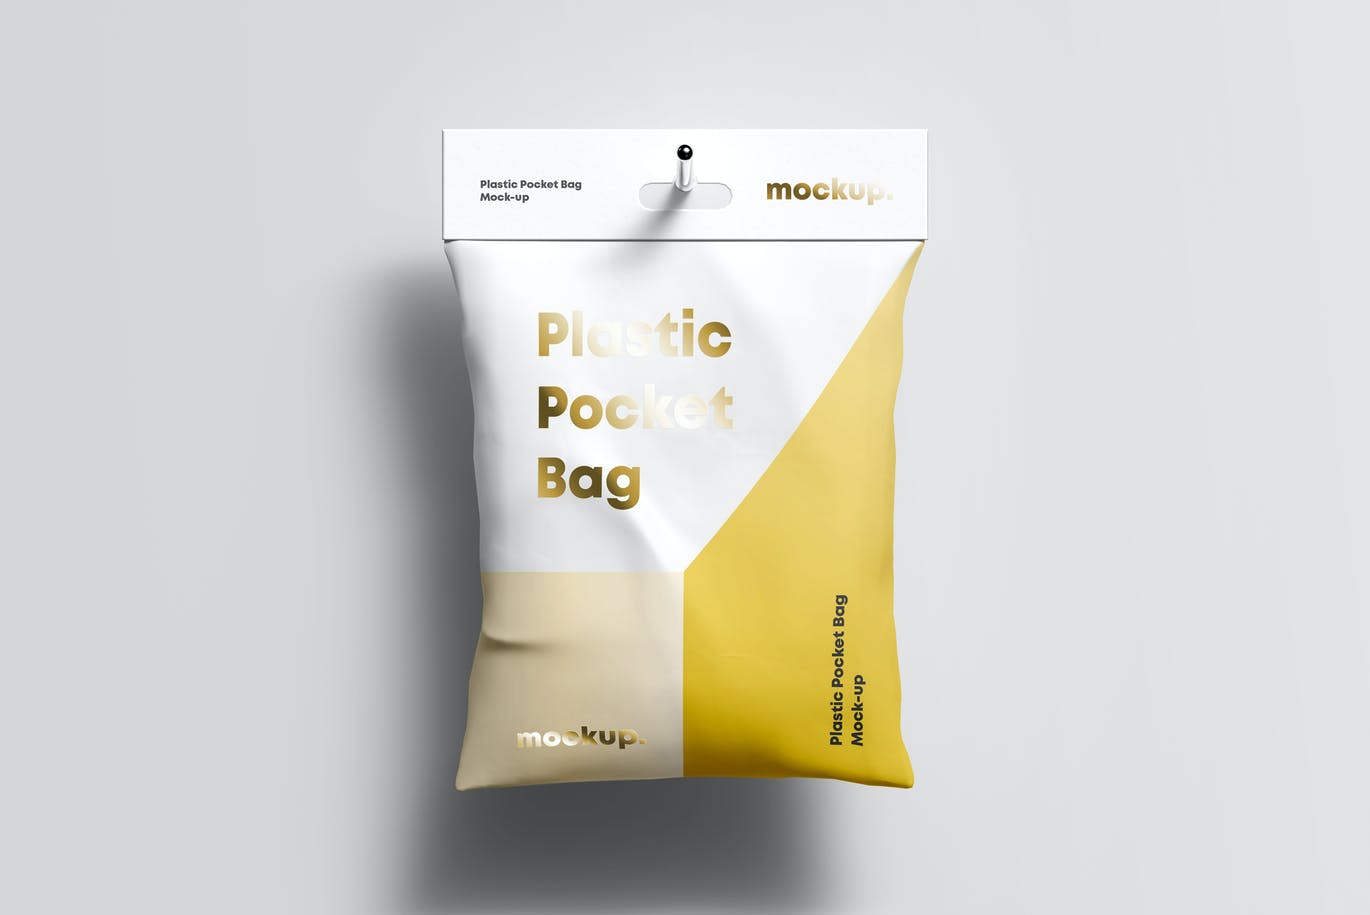 15 塑料充气食品袋包装设计样机模板 (psd)Plastic Pocket Bag Mock-up.rar